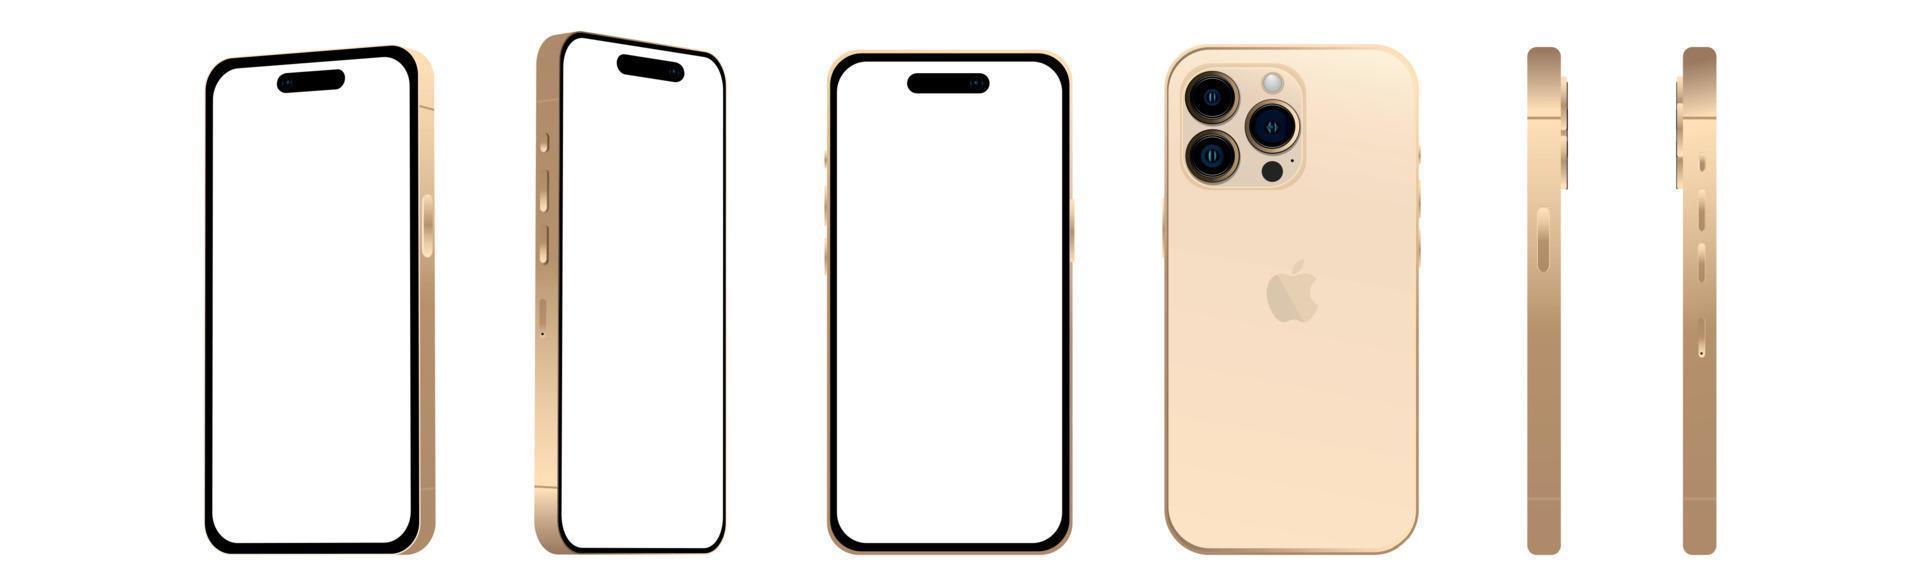 conjunto de 6 pcs ângulos diferentes, modelos dourados pro smartphone apple iphone 14, nova indústria de ti, maquete para web design em um fundo branco - vetor